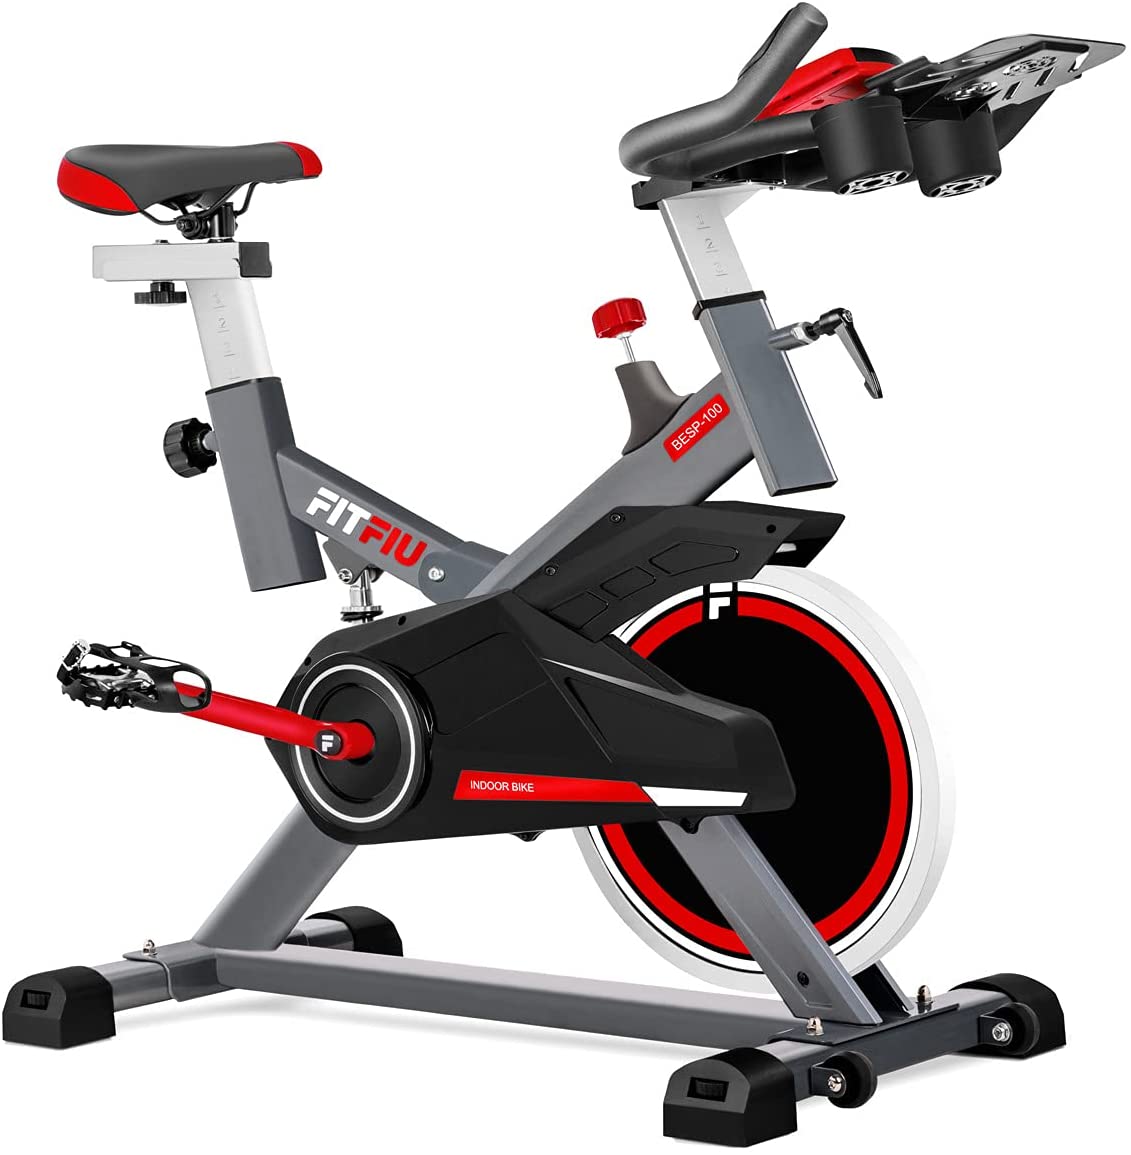 FITFIU Fitness - Bicicleta Indoor con múltiples niveles de resistencia, manillar de triatlón, Pulsómetro y pantalla LCD, Bici para casa entrenamiento Cardio y Fitness con disco inercia